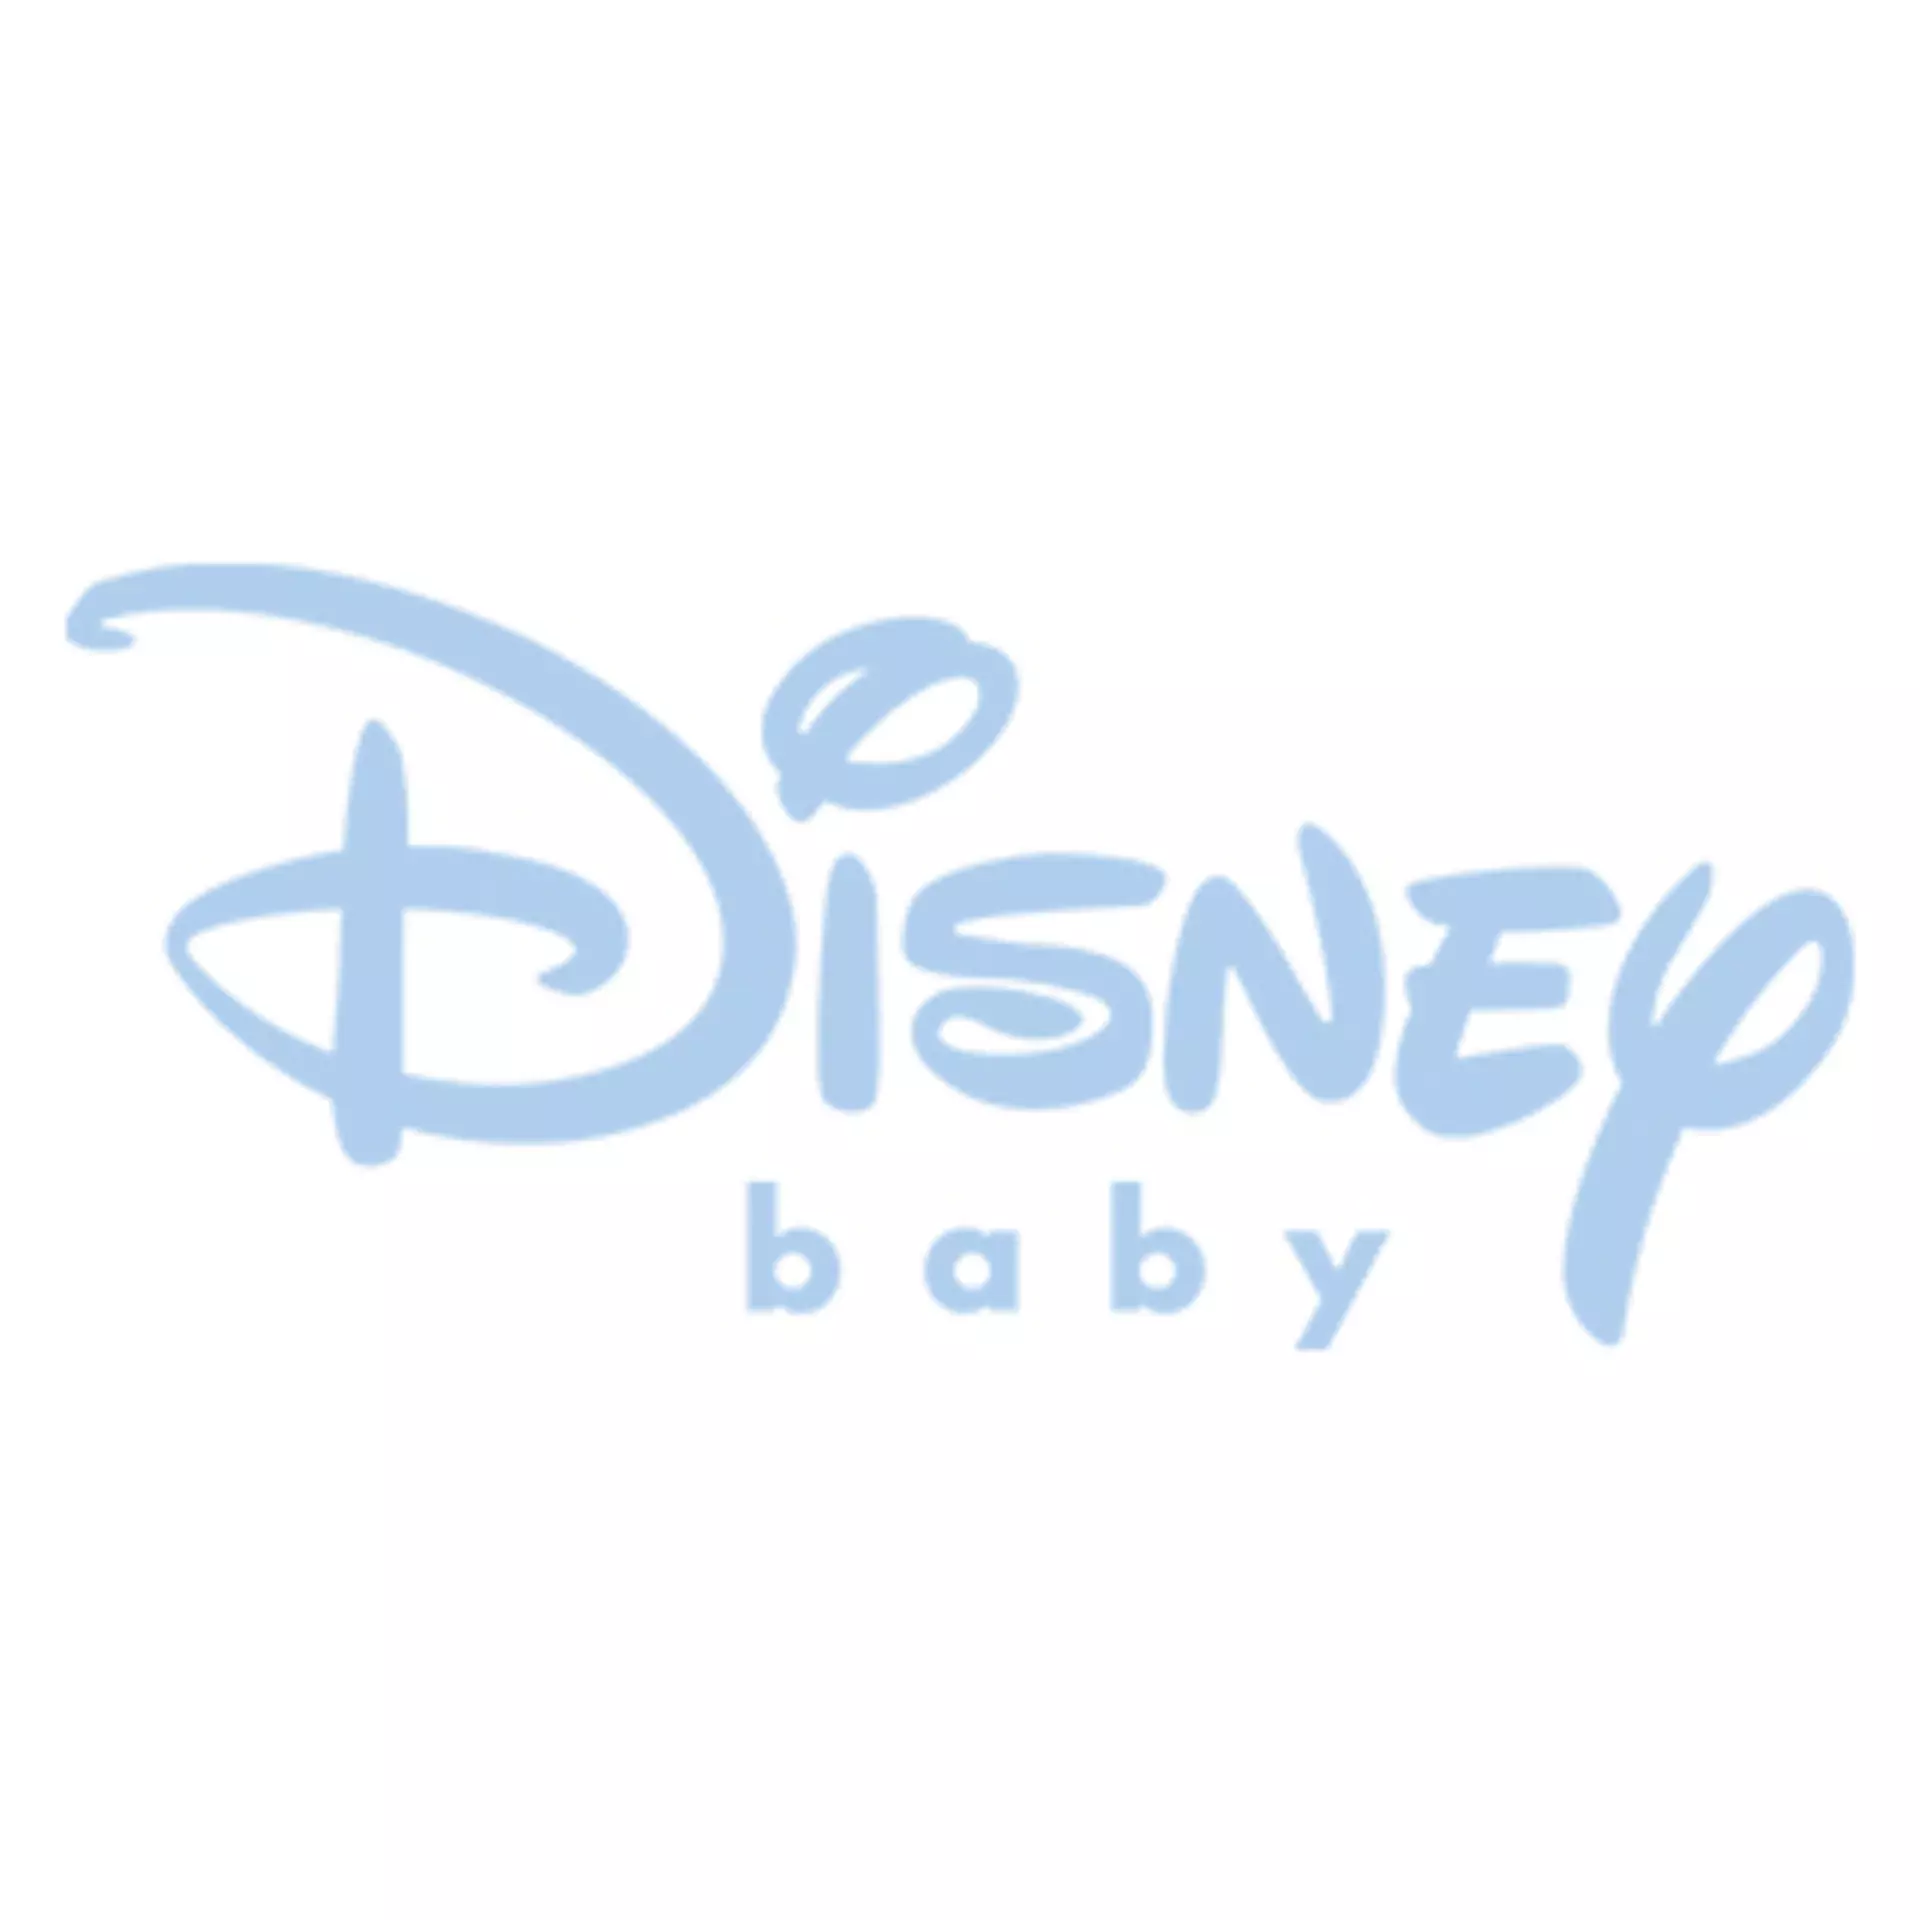 Disney baby Heimtextilien bei Möbel Inhofer